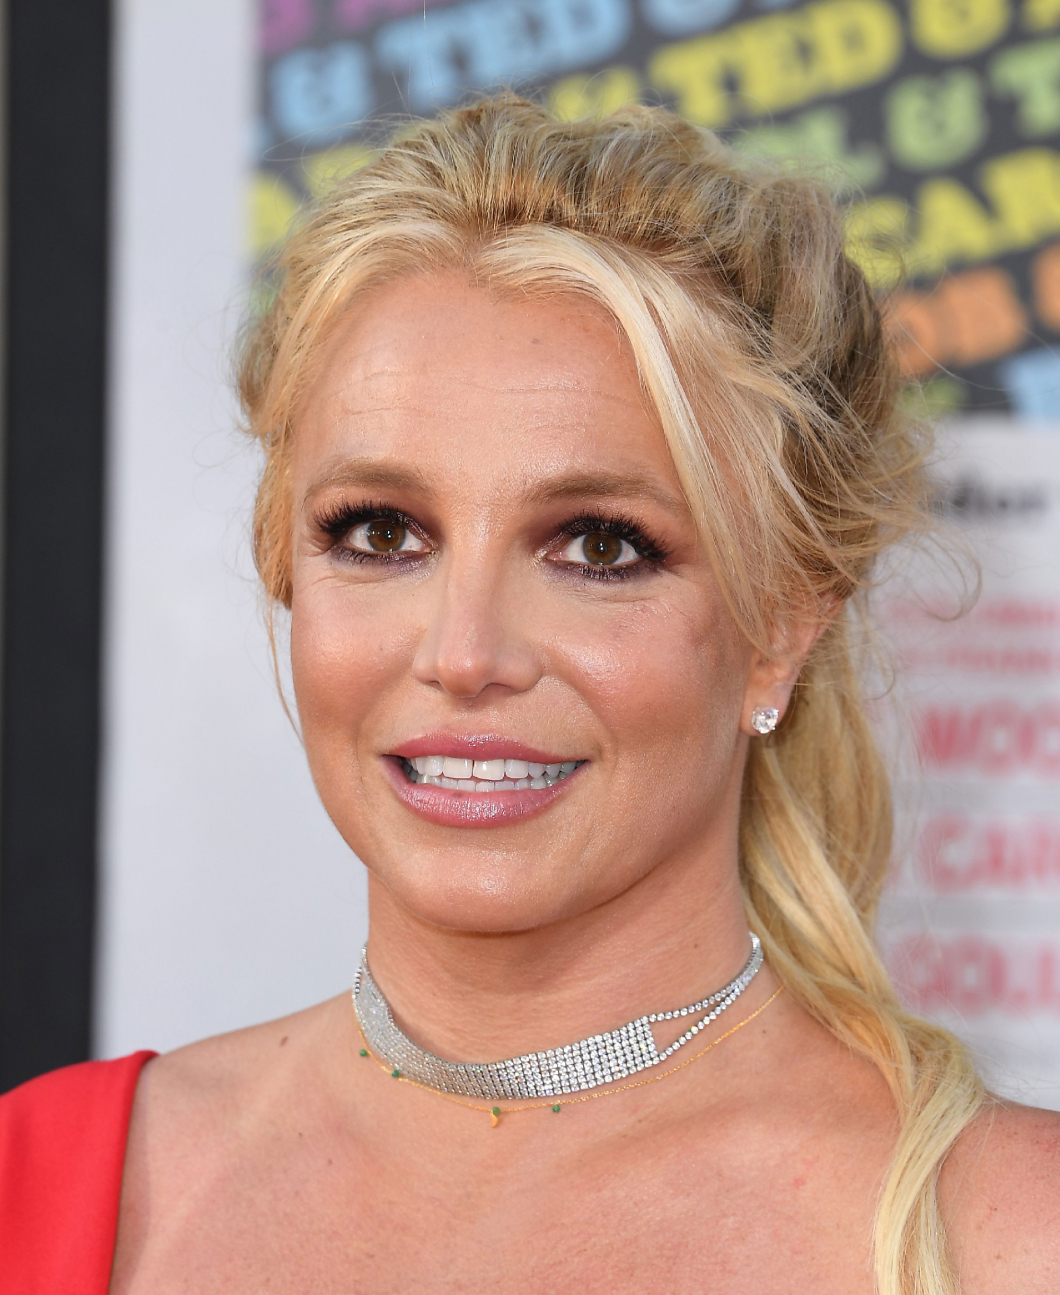 Itt a fordulat Britney Spears ügyében